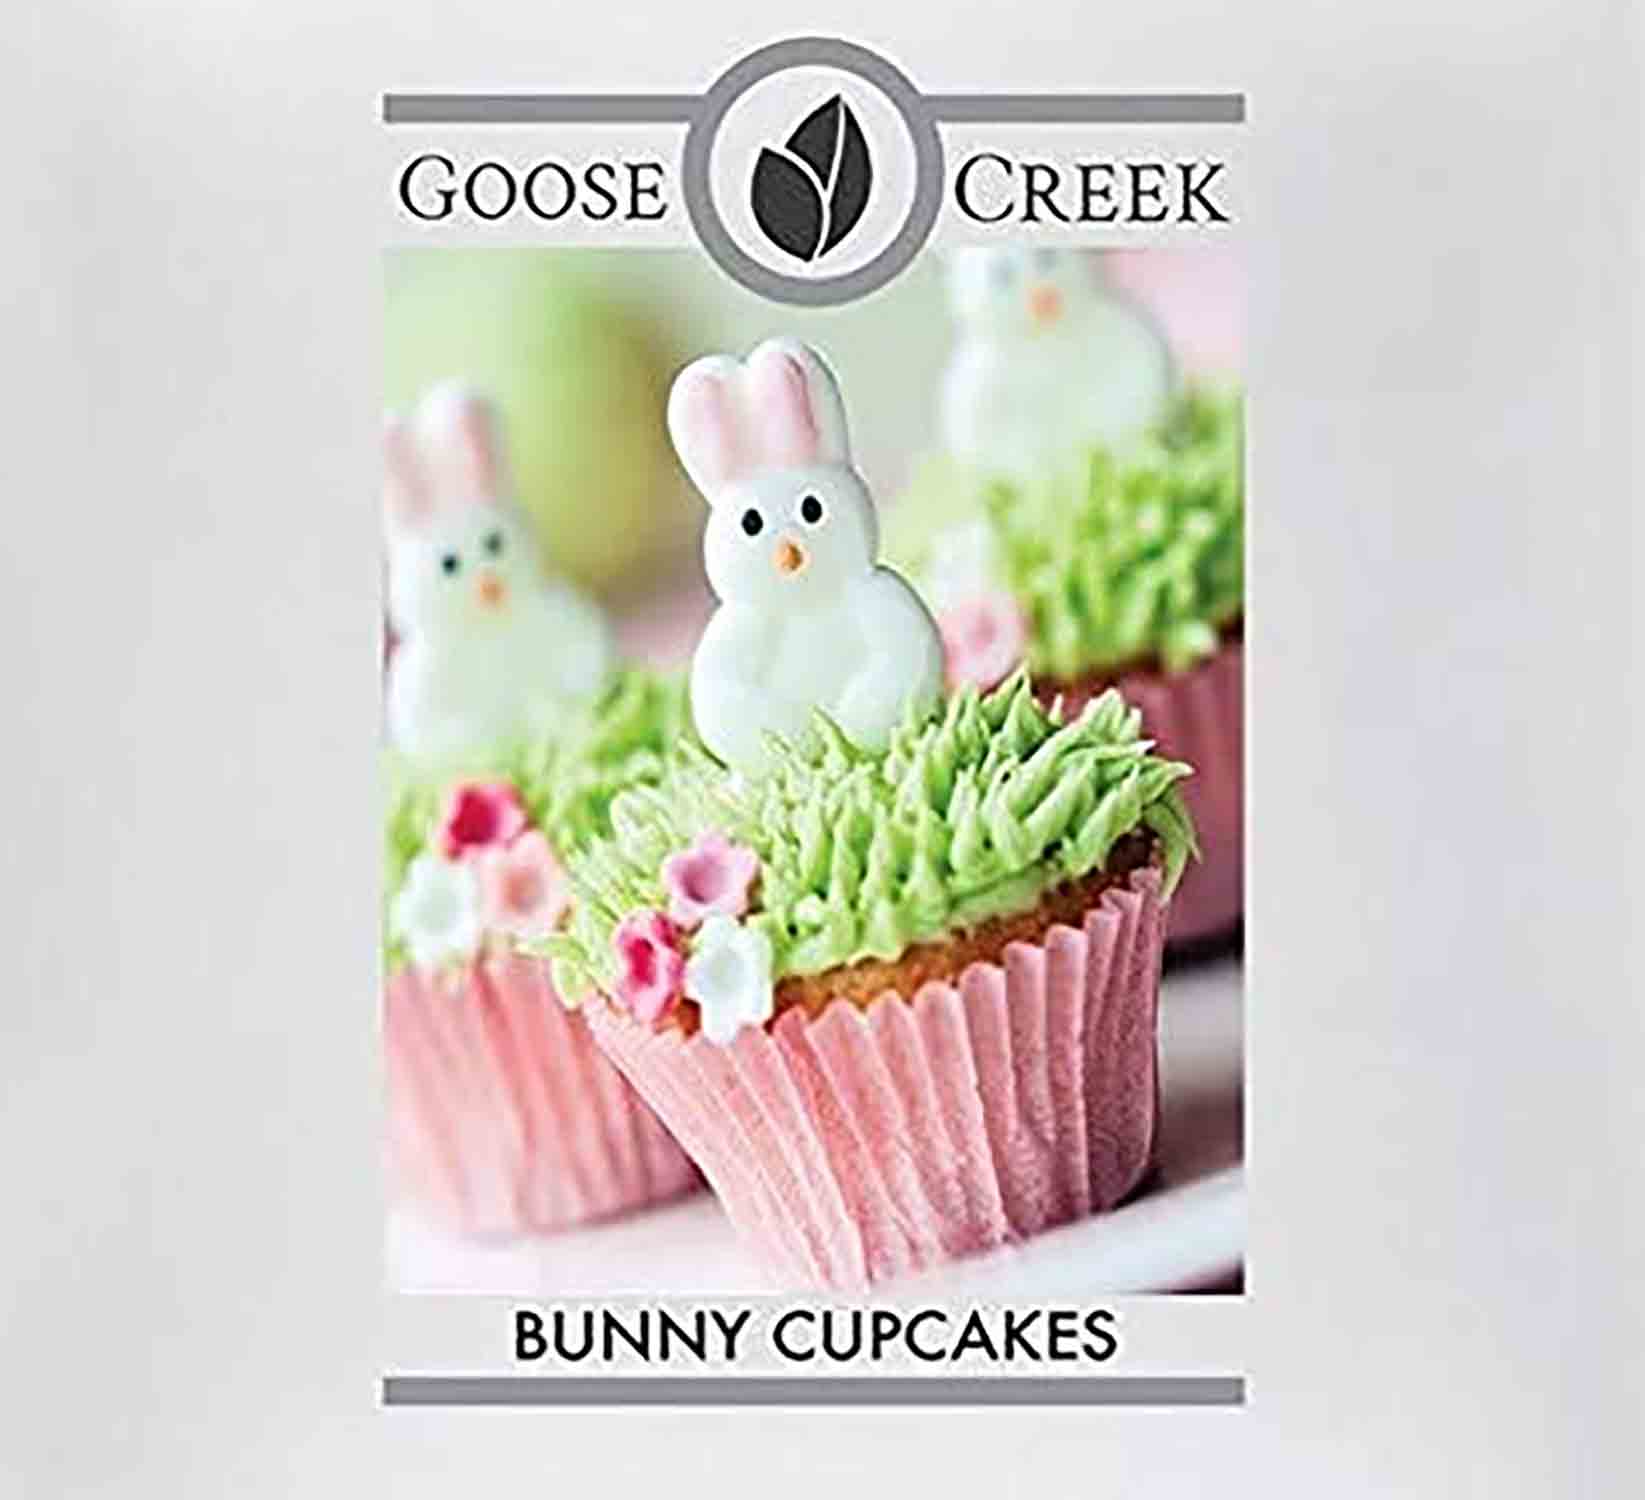 Goose Creek Bunny Cupcakes USA 22g - Crumble vosk